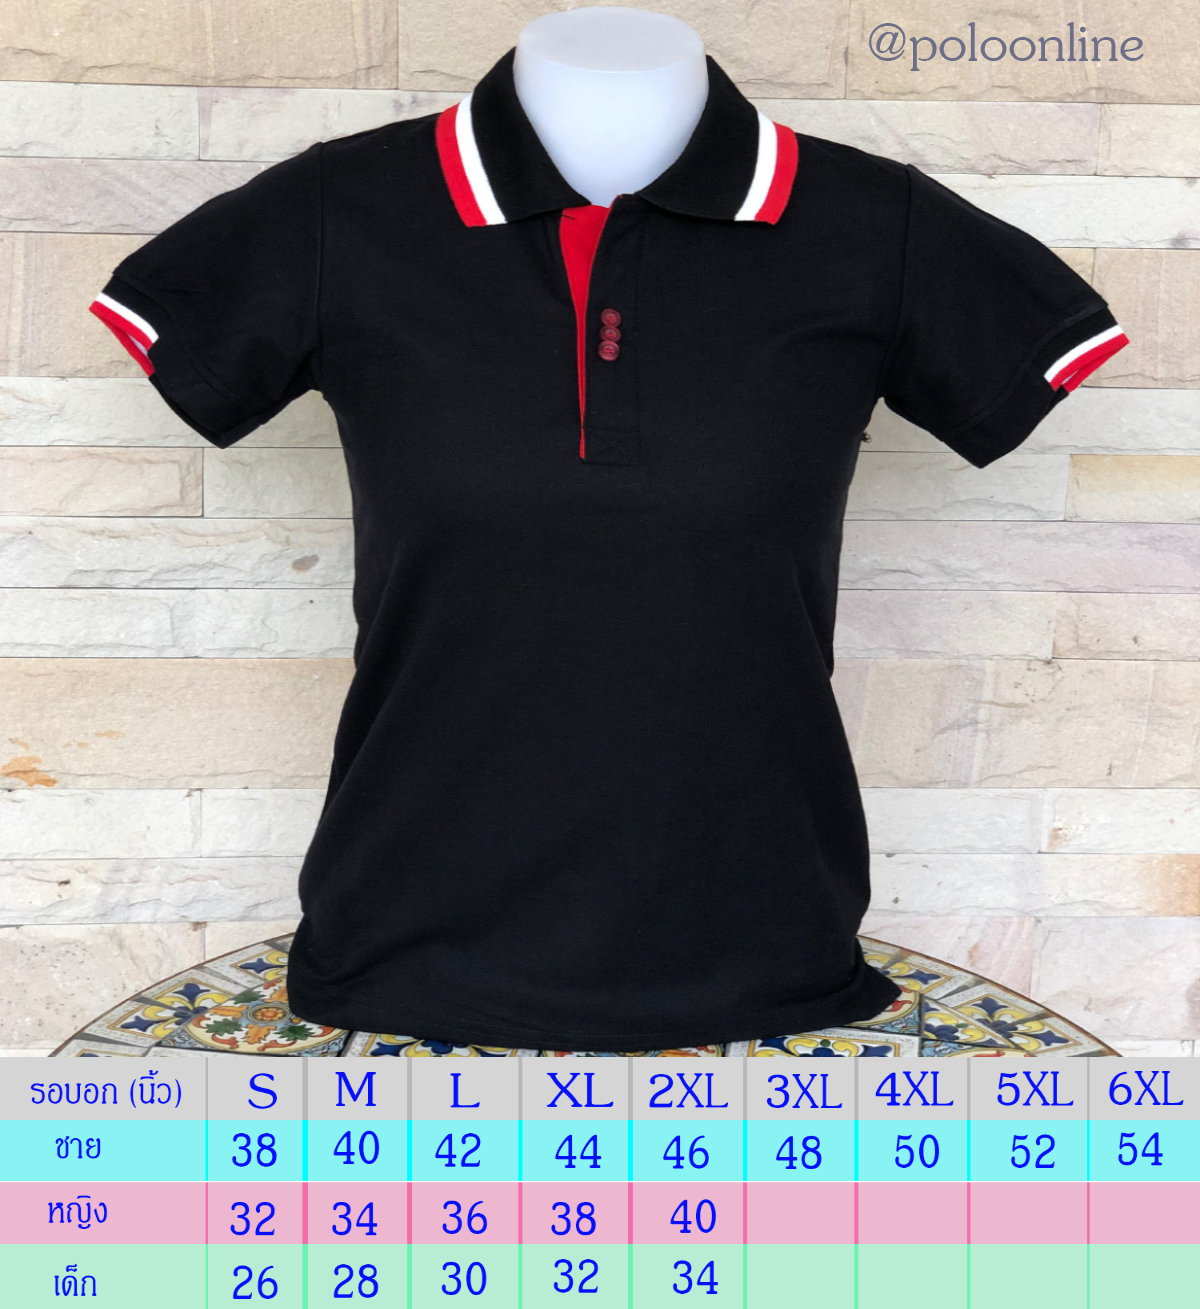 เสื้อโปโล Polo Shirt Plain Polo T Shirt Soft Pique Short Sleeve Tops For Men Side Vents สีดำ ปกขลีปขาวแดง เนื้อผ้านุ่ม สวมใส่สบาย ซึ่งมีทั้งแบบชาย และแบบผู้หญิง